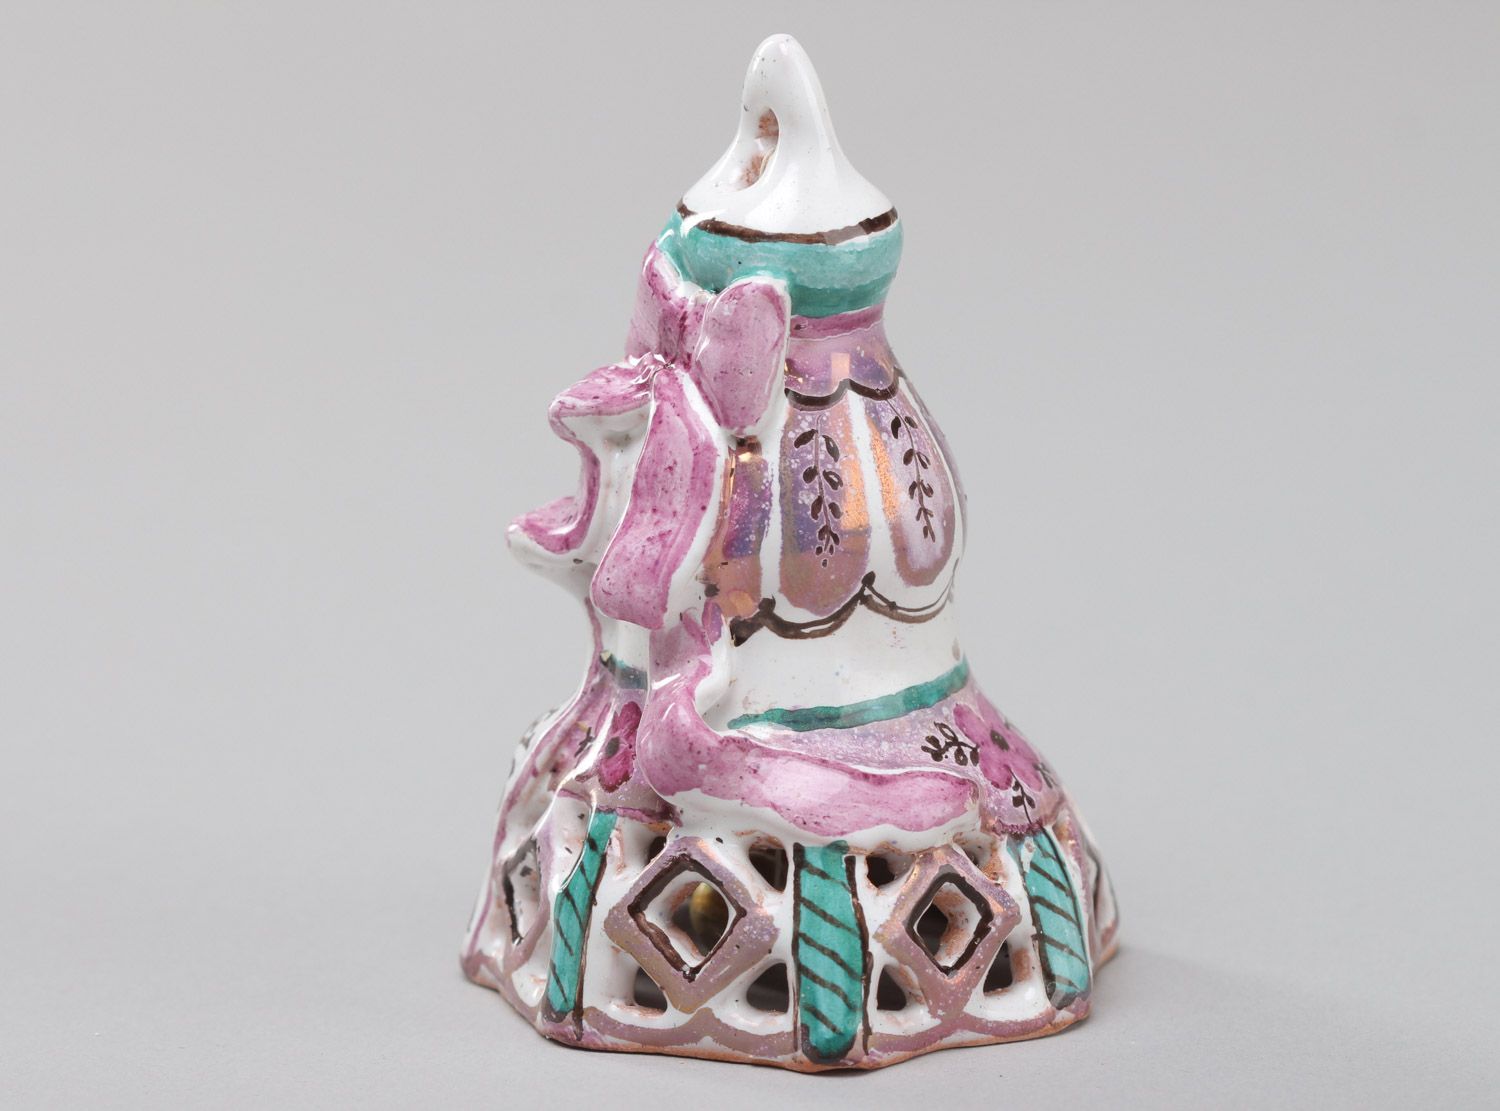 Праздничный керамический колокольчик с росписью эмалью и красками ручной работы фото 2